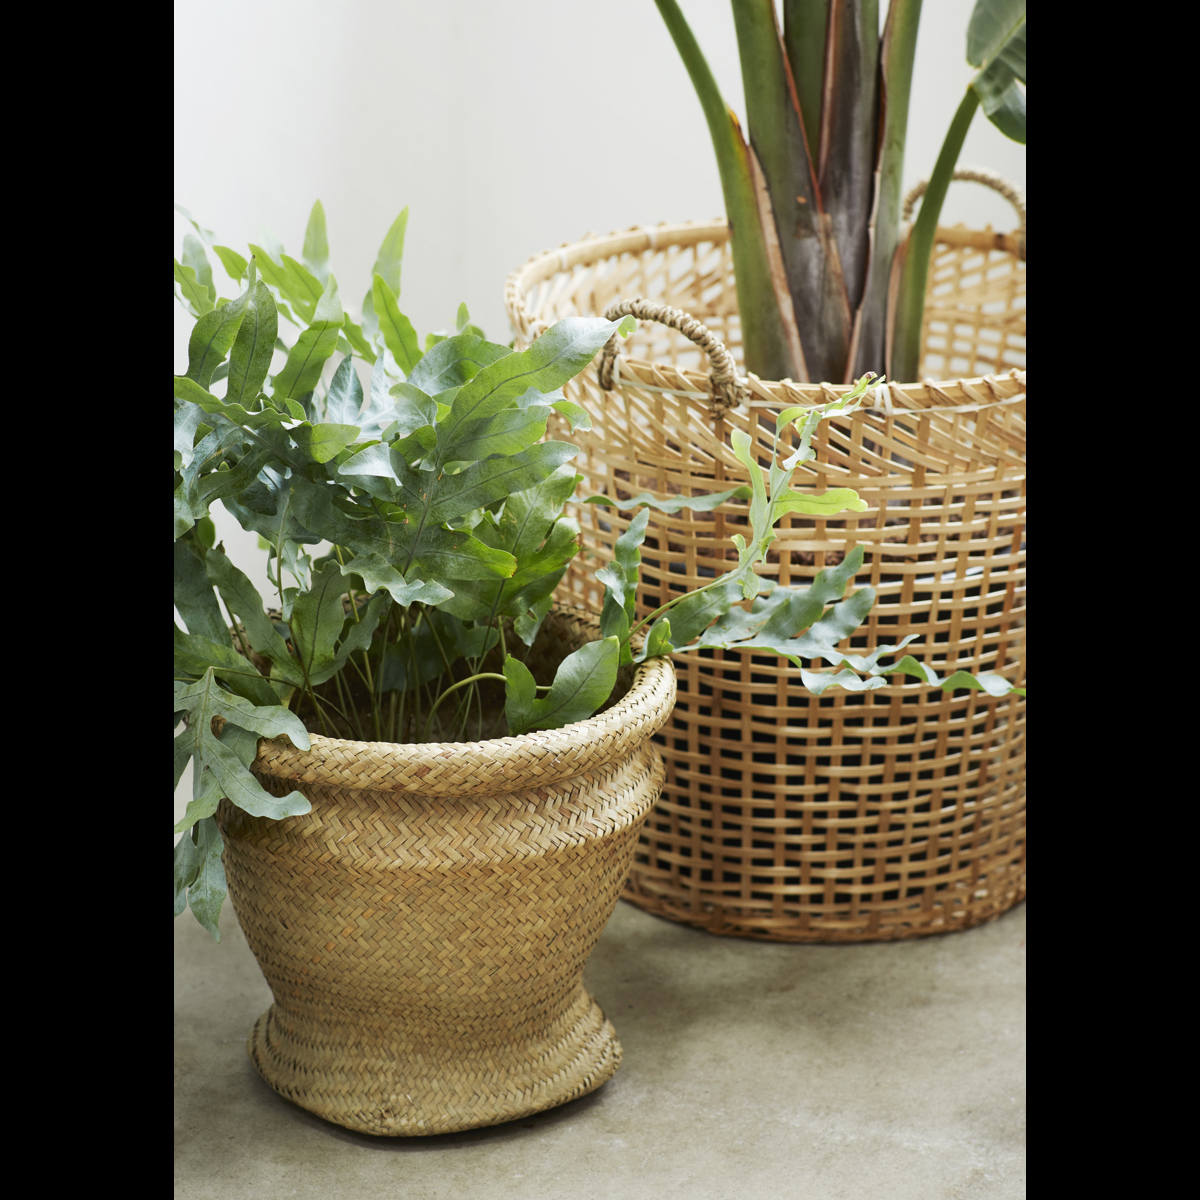 Round grass baskets